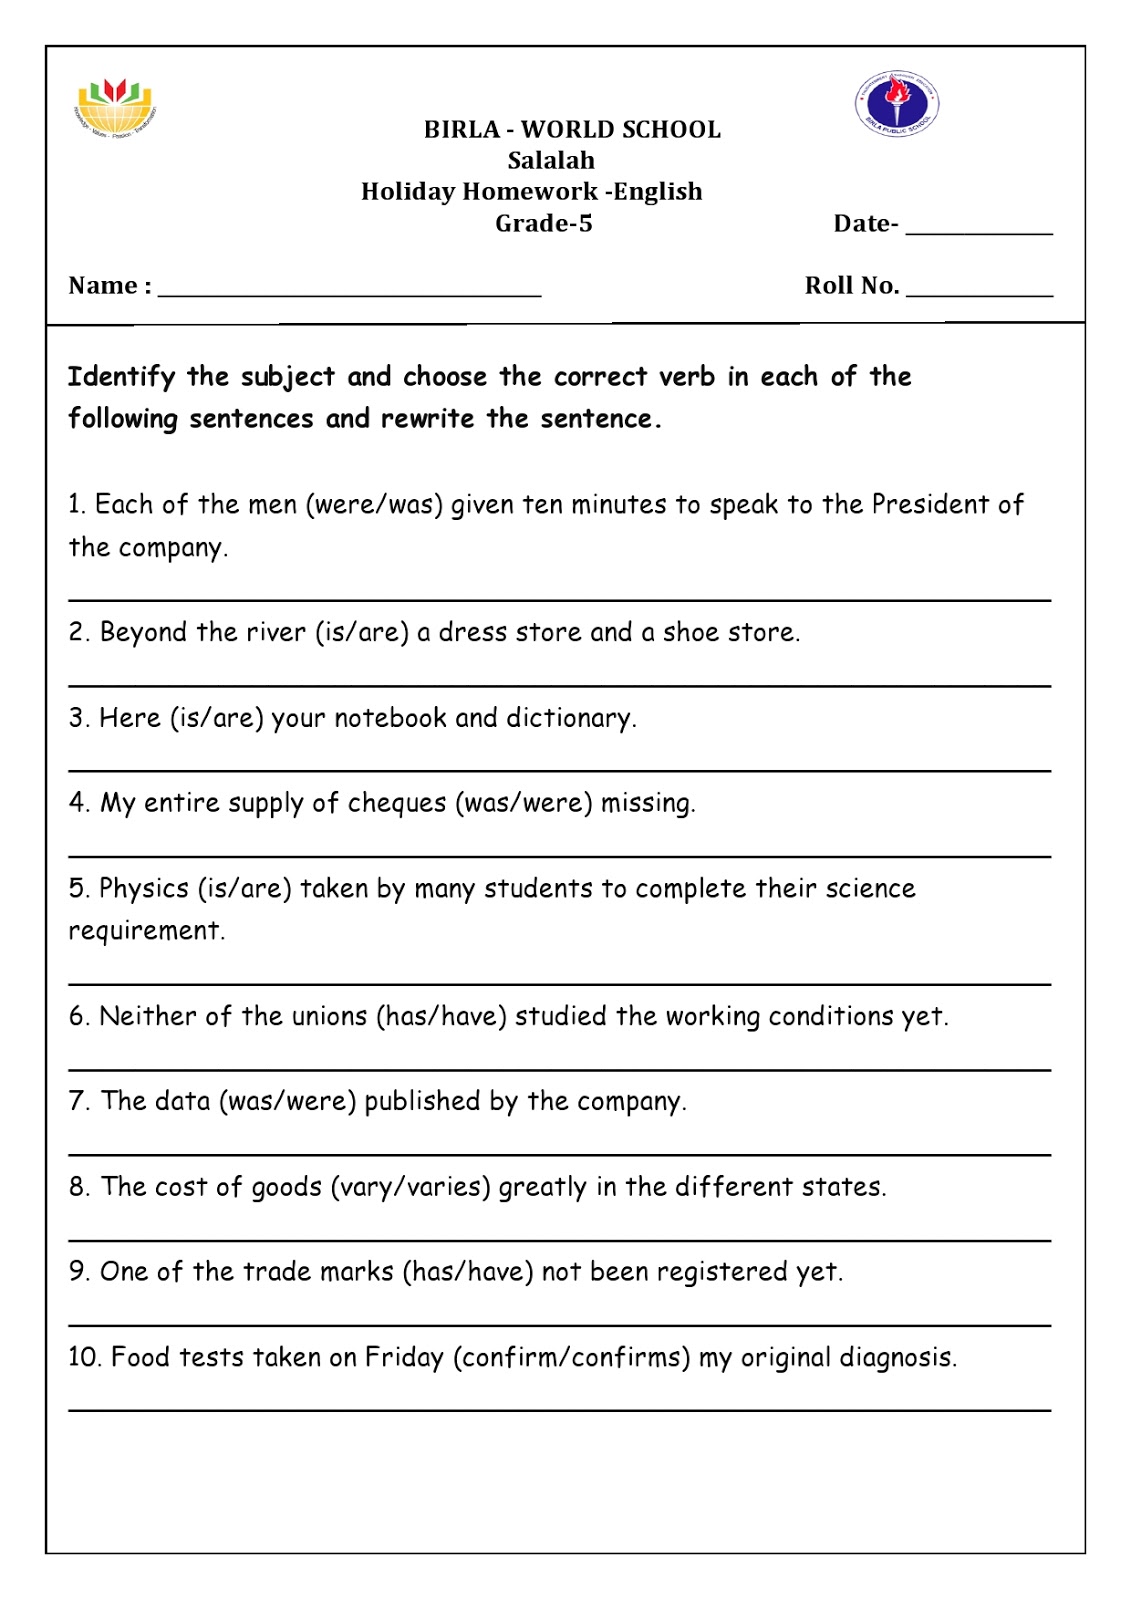 grade 5 holiday homework pdf